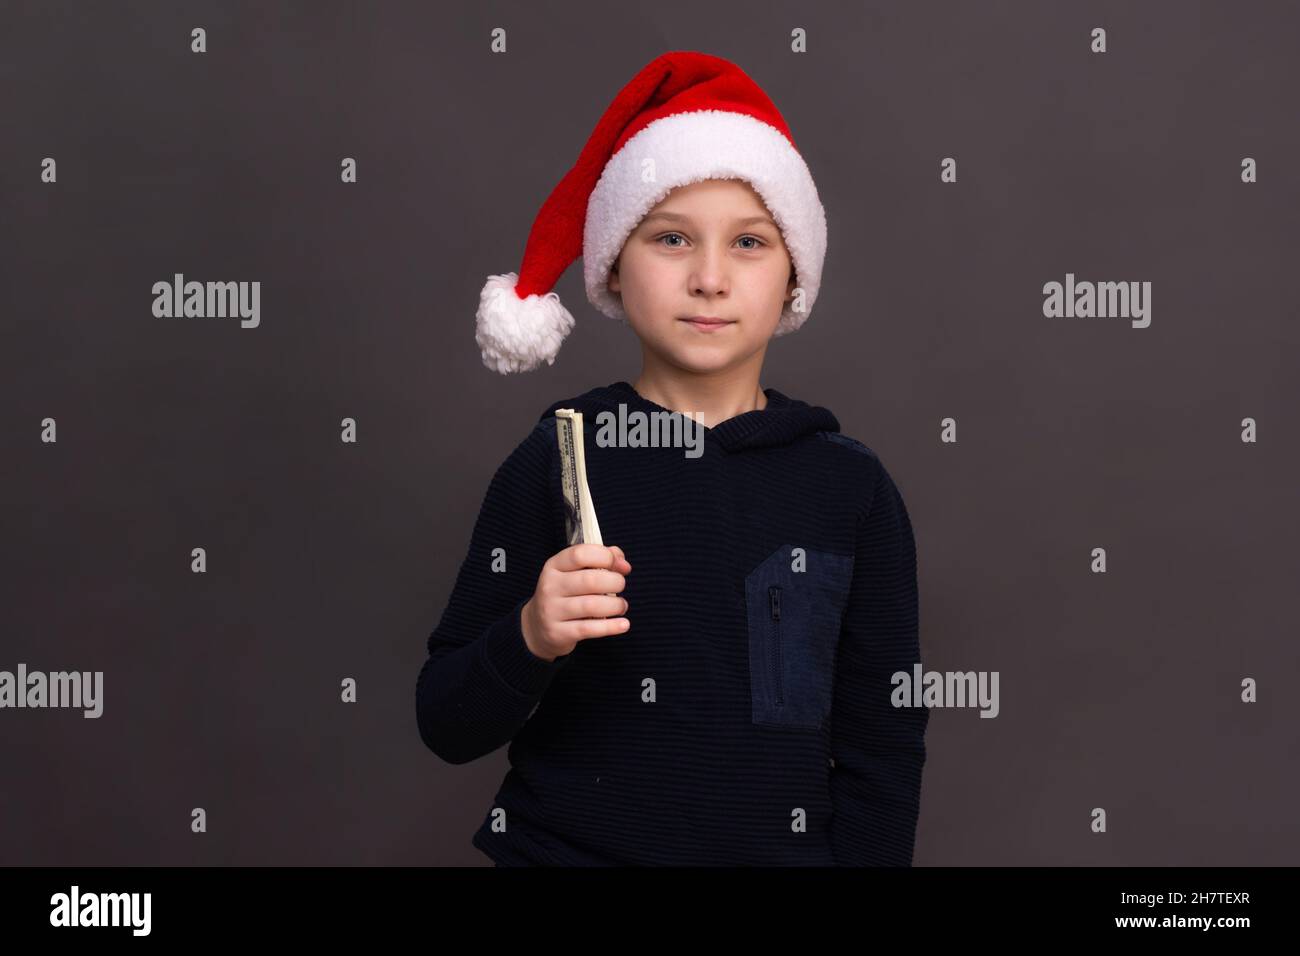 Un garçon de 8 à 10 ans dans un chapeau de Père Noël tient un paquet de billets dans sa main. Maquette Banque D'Images